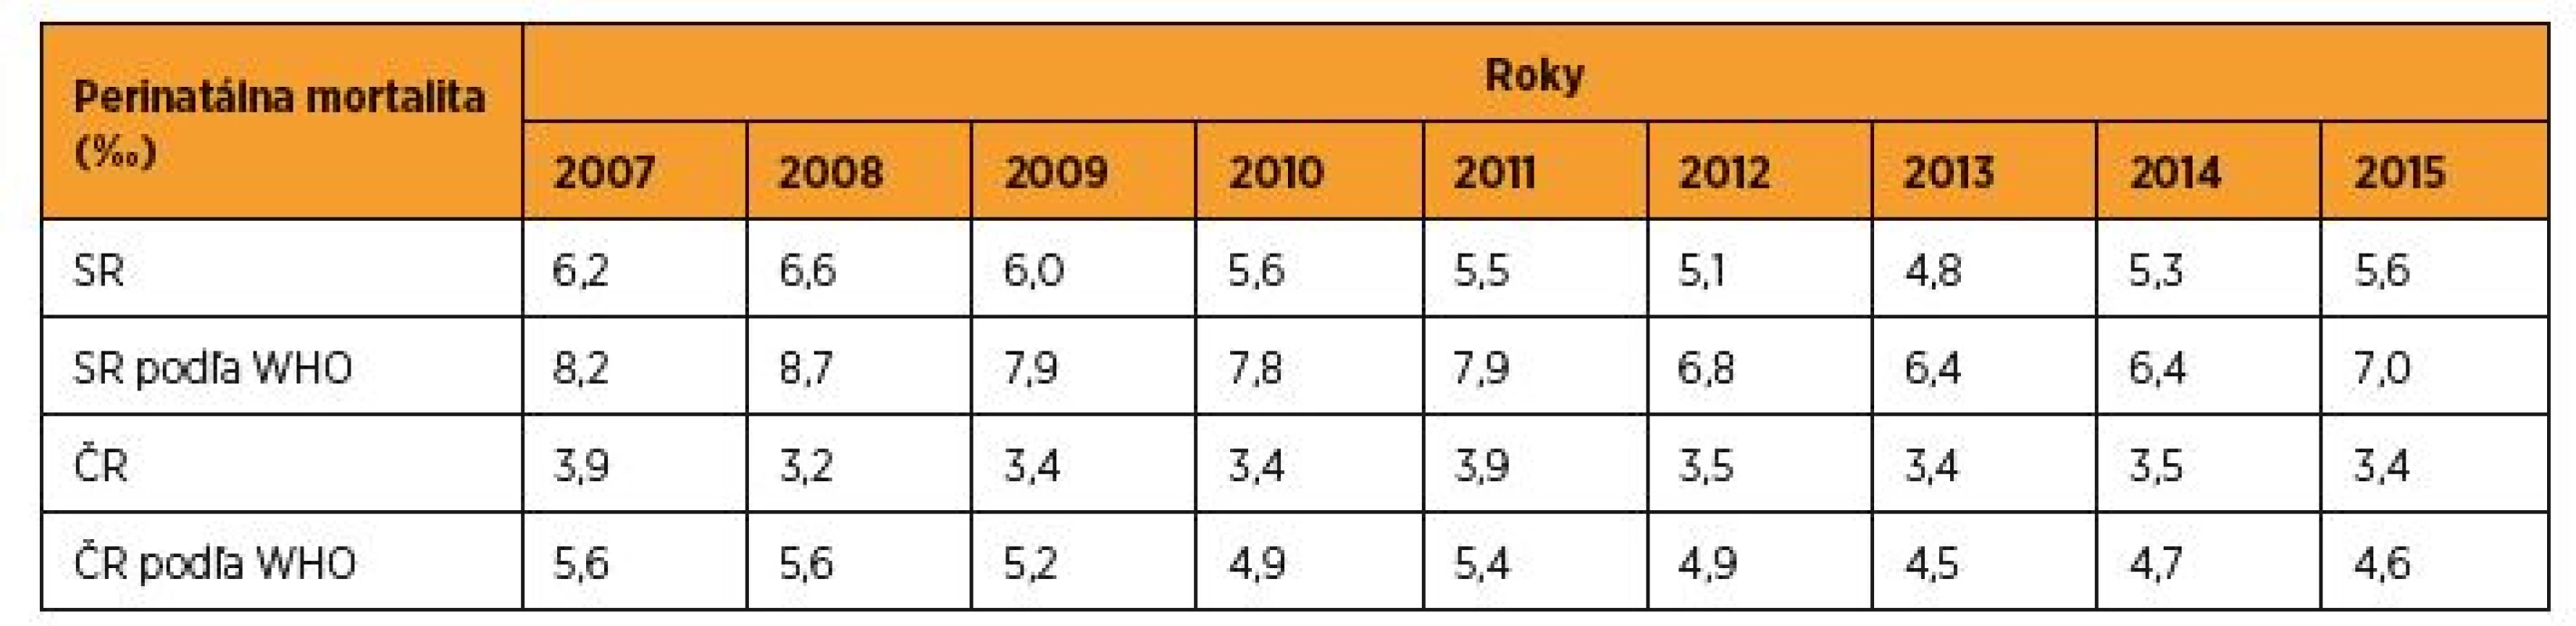 Perinatálna mortalita (‰) podľa regionálnych a WHO kritérií v SR a v ČR v rokoch 2007–2015 [zdroj SGPS, ČGPS]